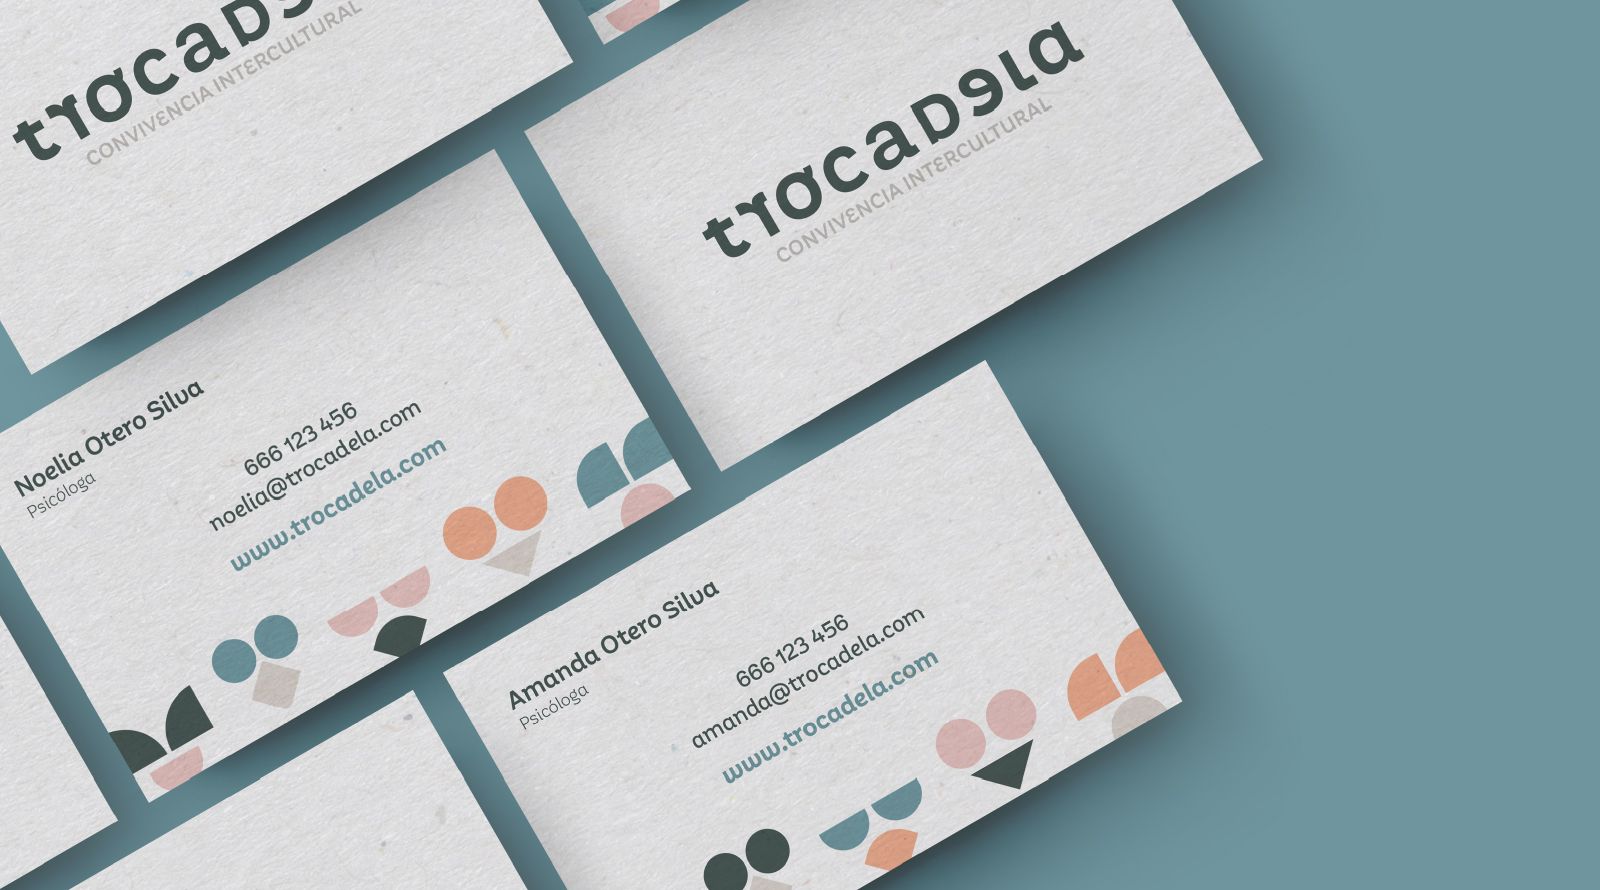 Trocadela - Diseño Branding y diseño de Web - Vigo